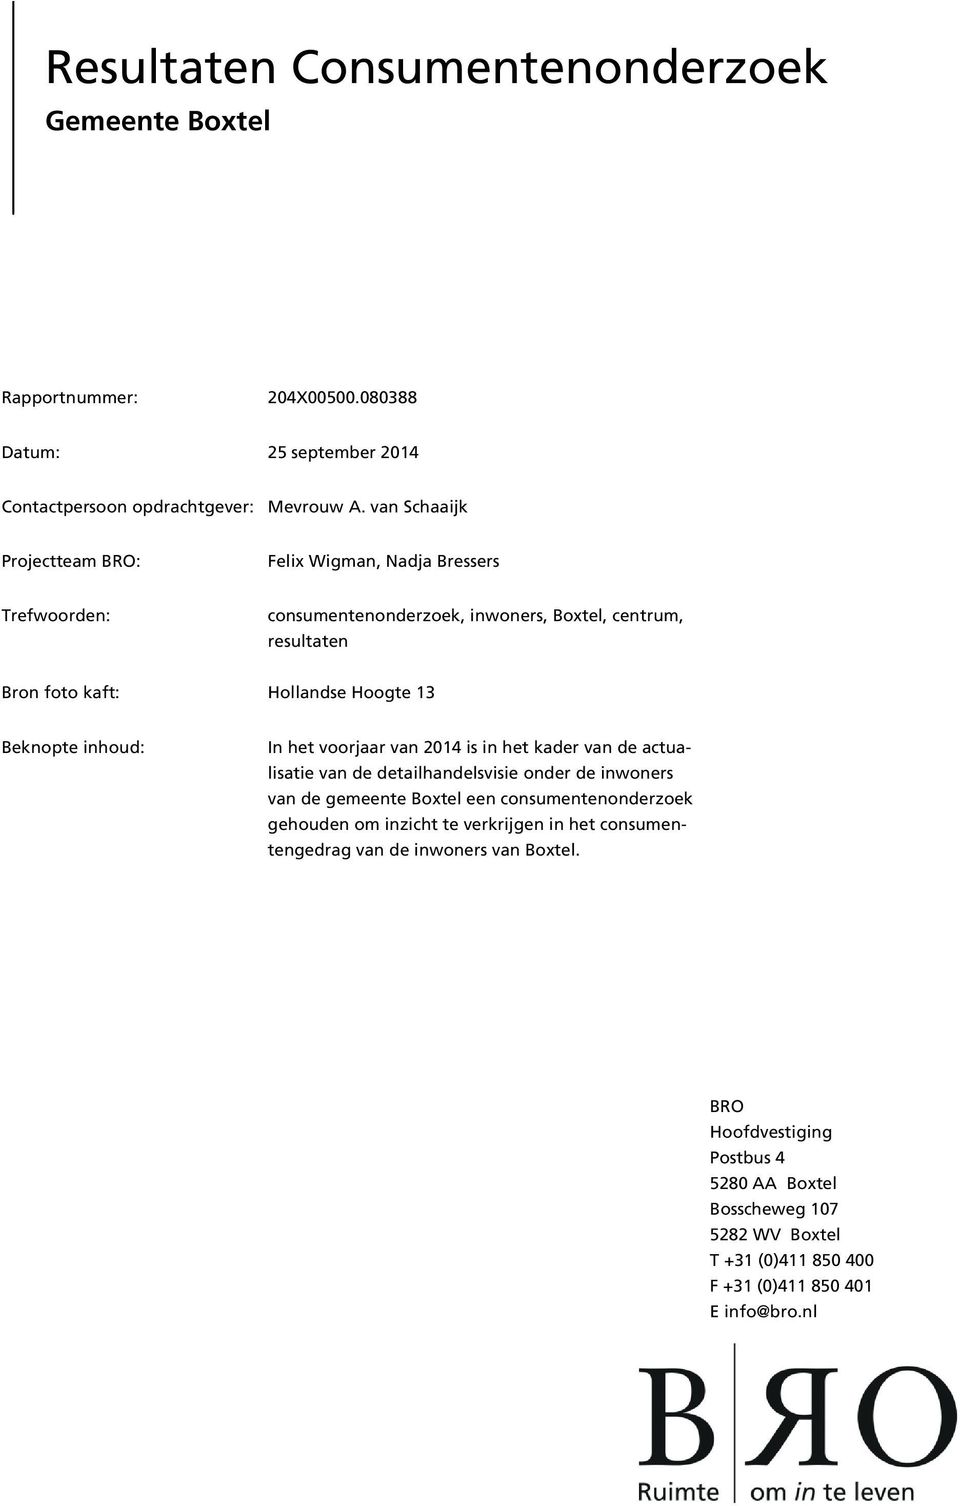 Beknopte inhoud: In het voorjaar van 2014 is in het kader van de actualisatie van de detailhandelsvisie onder de inwoners van de gemeente Boxtel een consumentenonderzoek